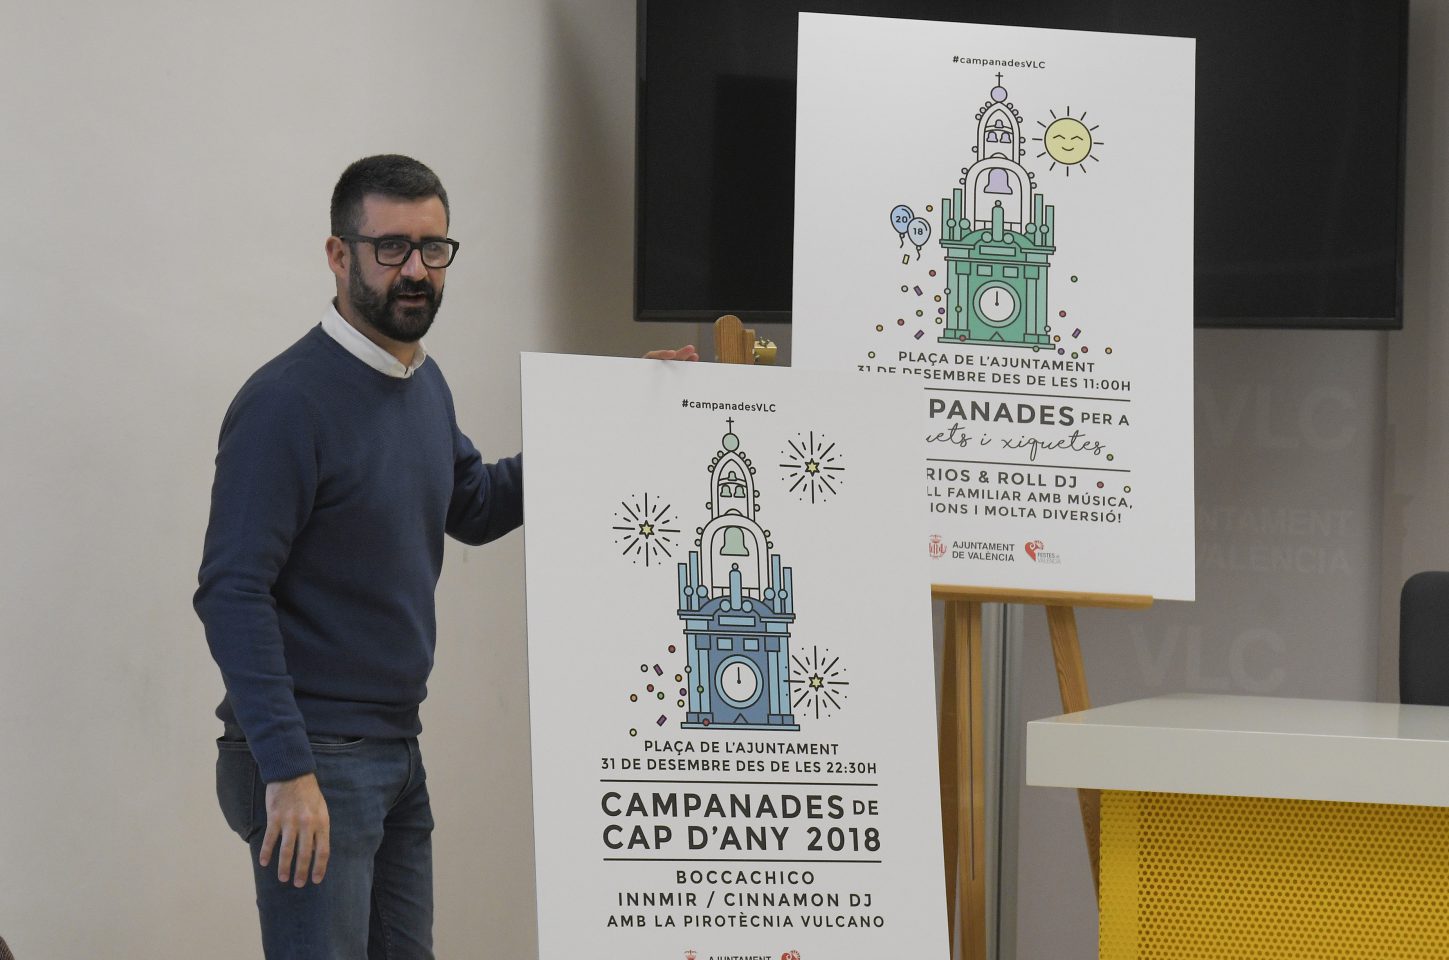 CAMPANADES DE CAP D’ANY 2018